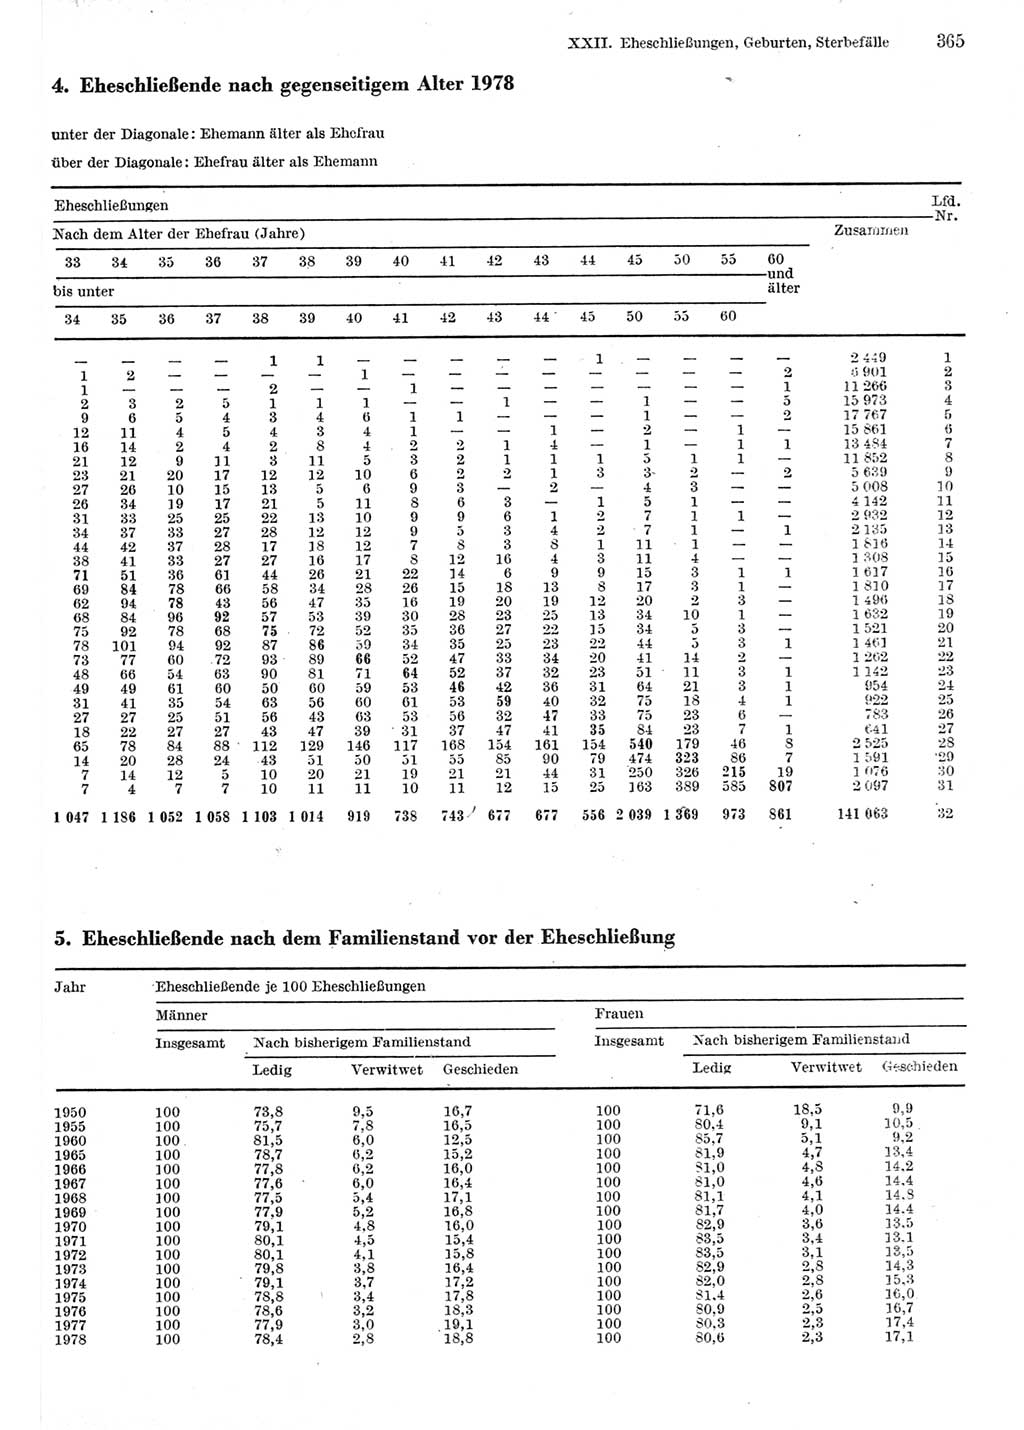 Statistisches Jahrbuch der Deutschen Demokratischen Republik (DDR) 1980, Seite 365 (Stat. Jb. DDR 1980, S. 365)